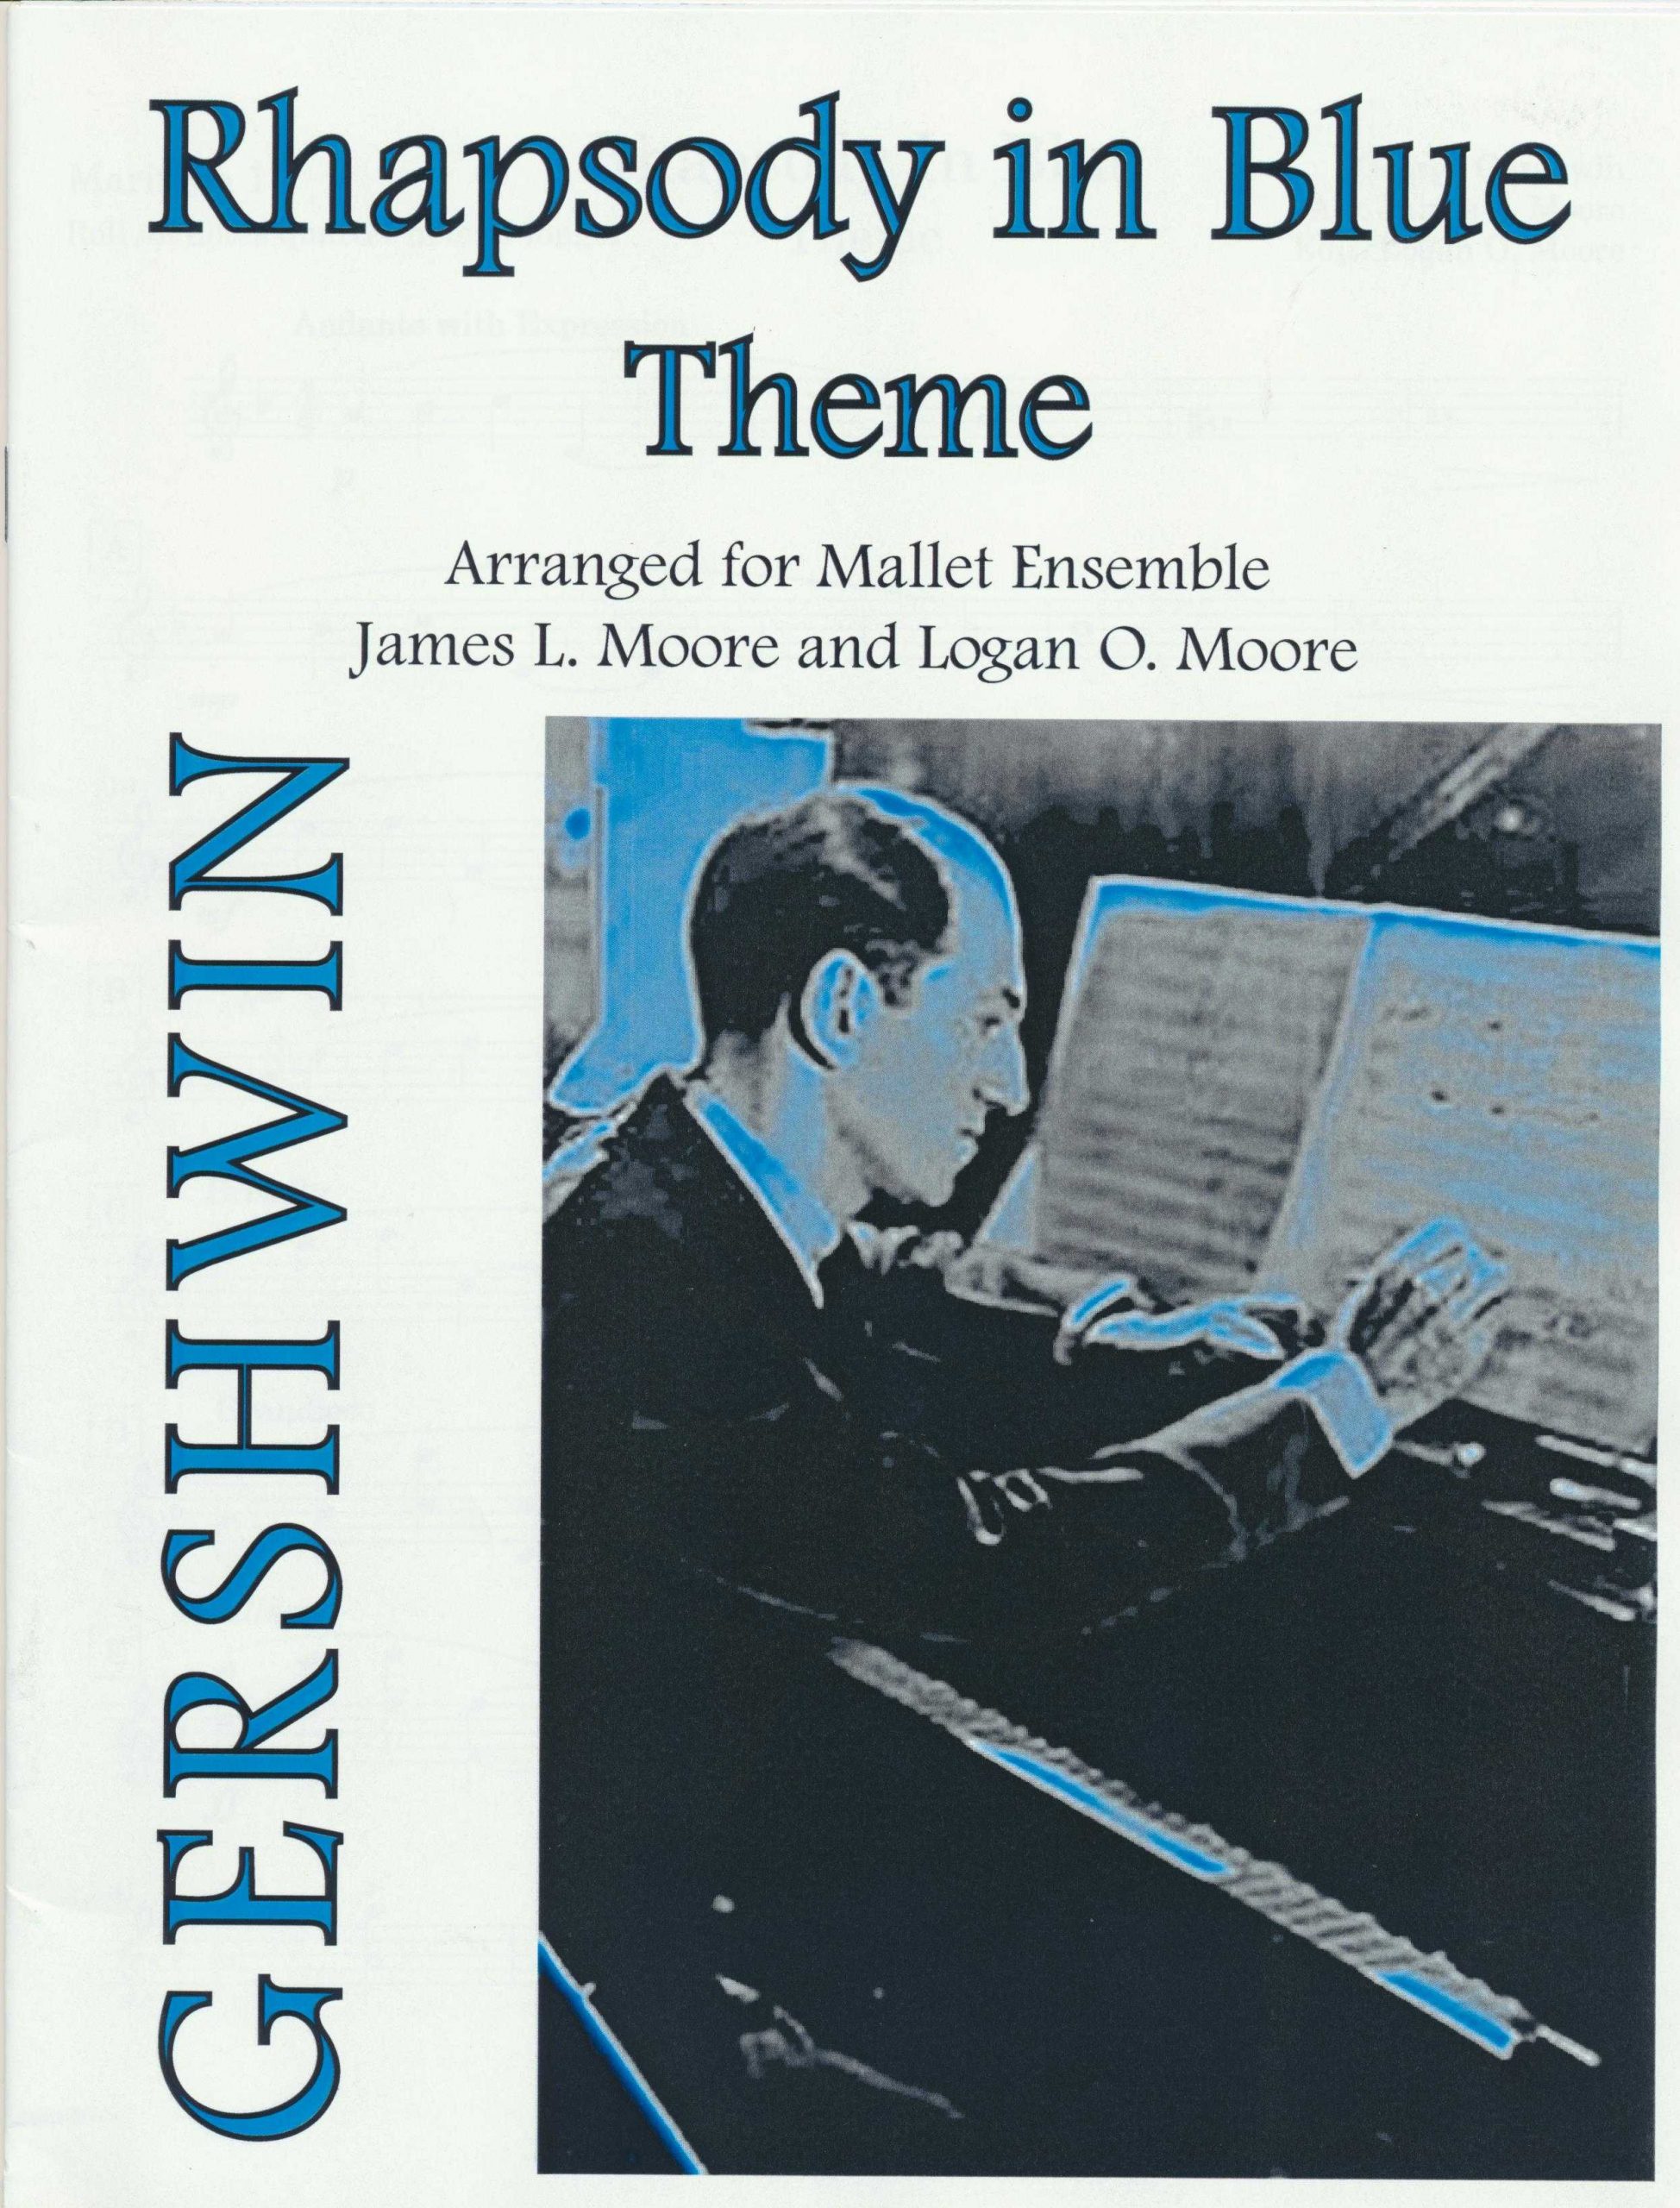 Rhapsody in Blue Theme by Gershwin arr. James Moore